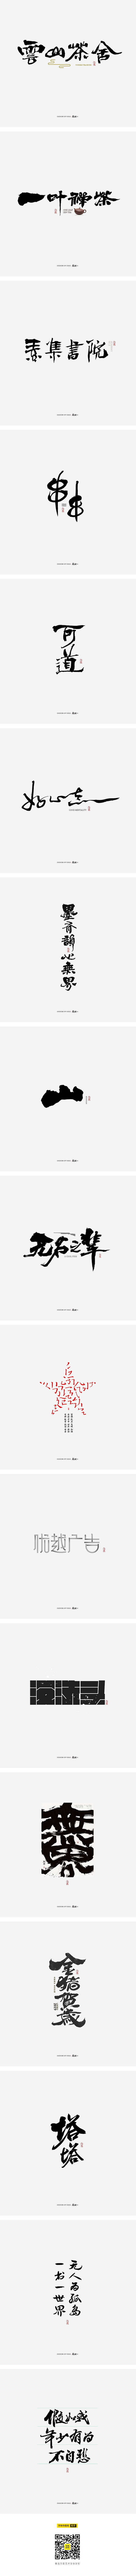 斯科/字型杂记-字体传奇网-中国首个字体...